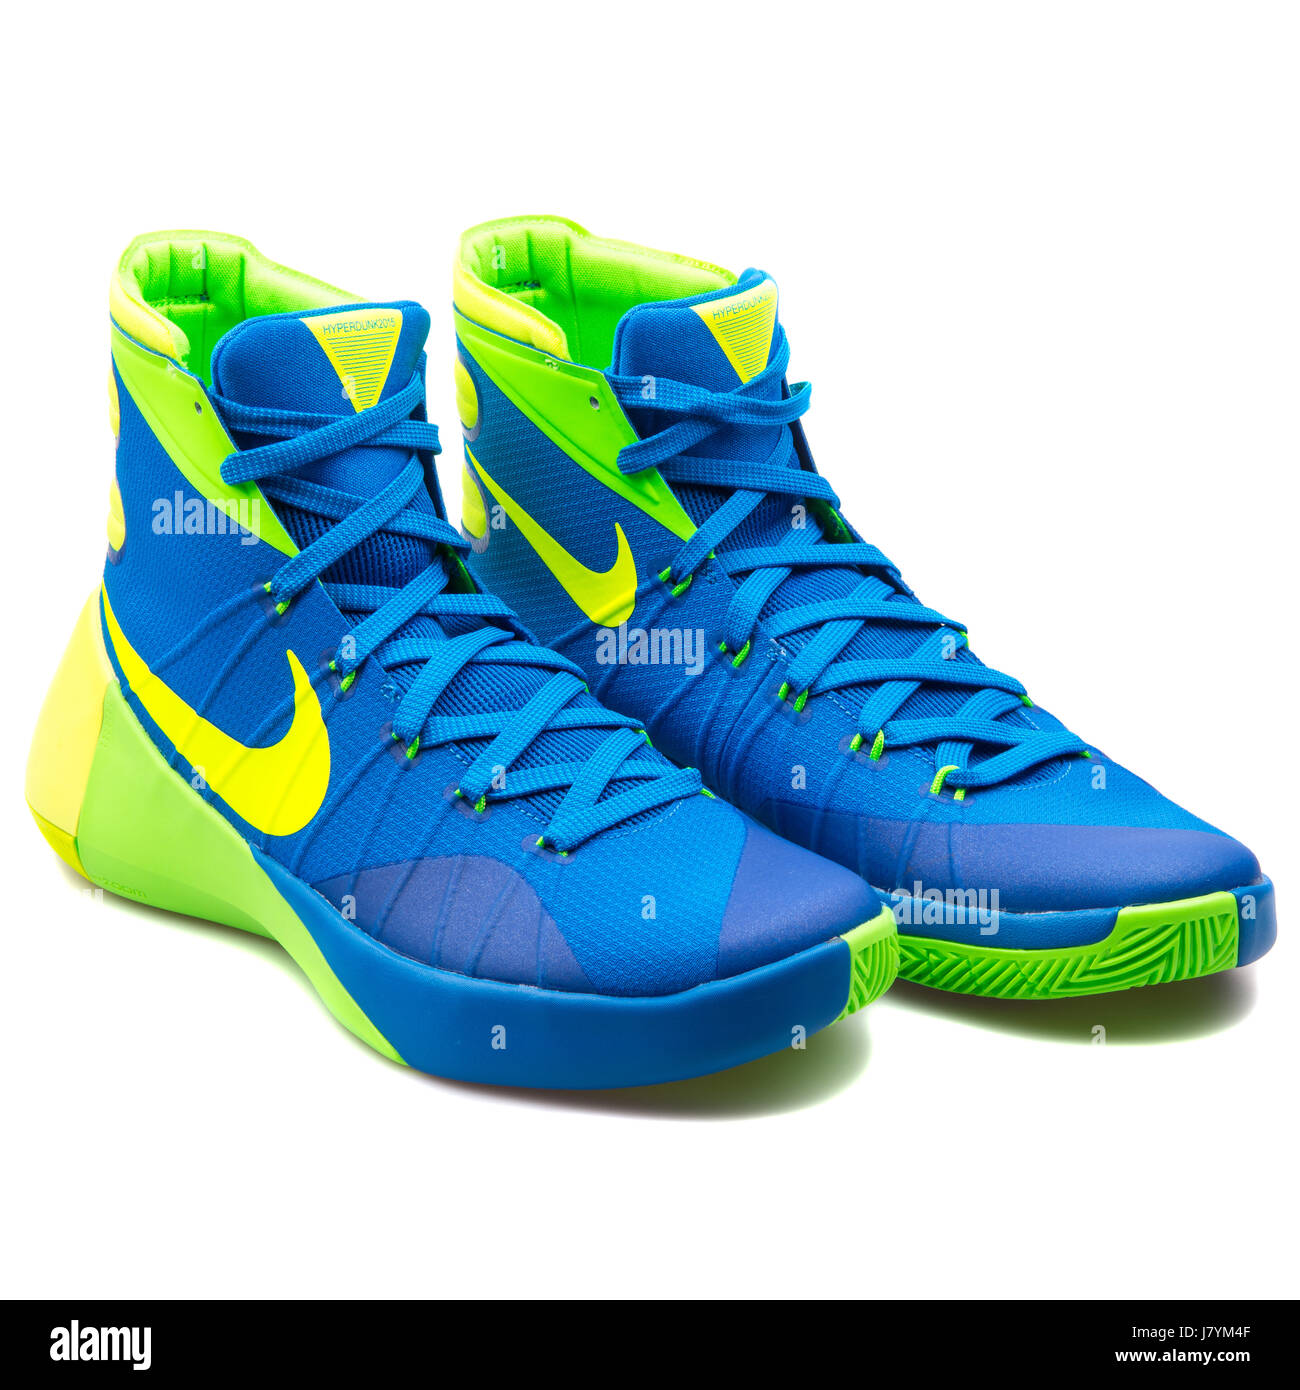 Conciso Preocupado ficción Nike Hyperdunk 2015 hombres azul amarillo y verde zapatillas de baloncesto  - 749561-473 Fotografía de stock - Alamy